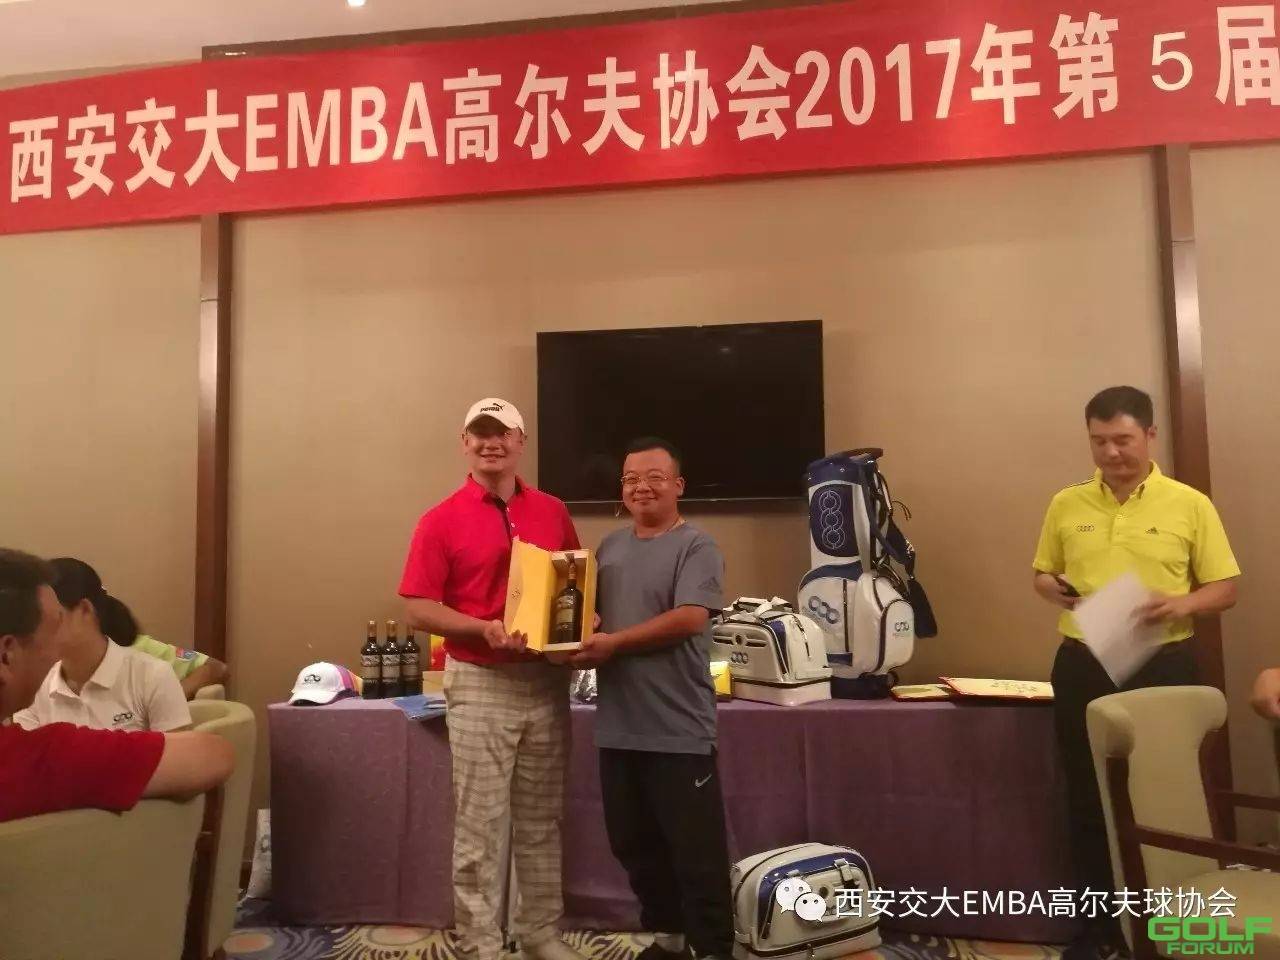 西安交大EMBA高尔夫协会2017年第五届月例赛圆满结束